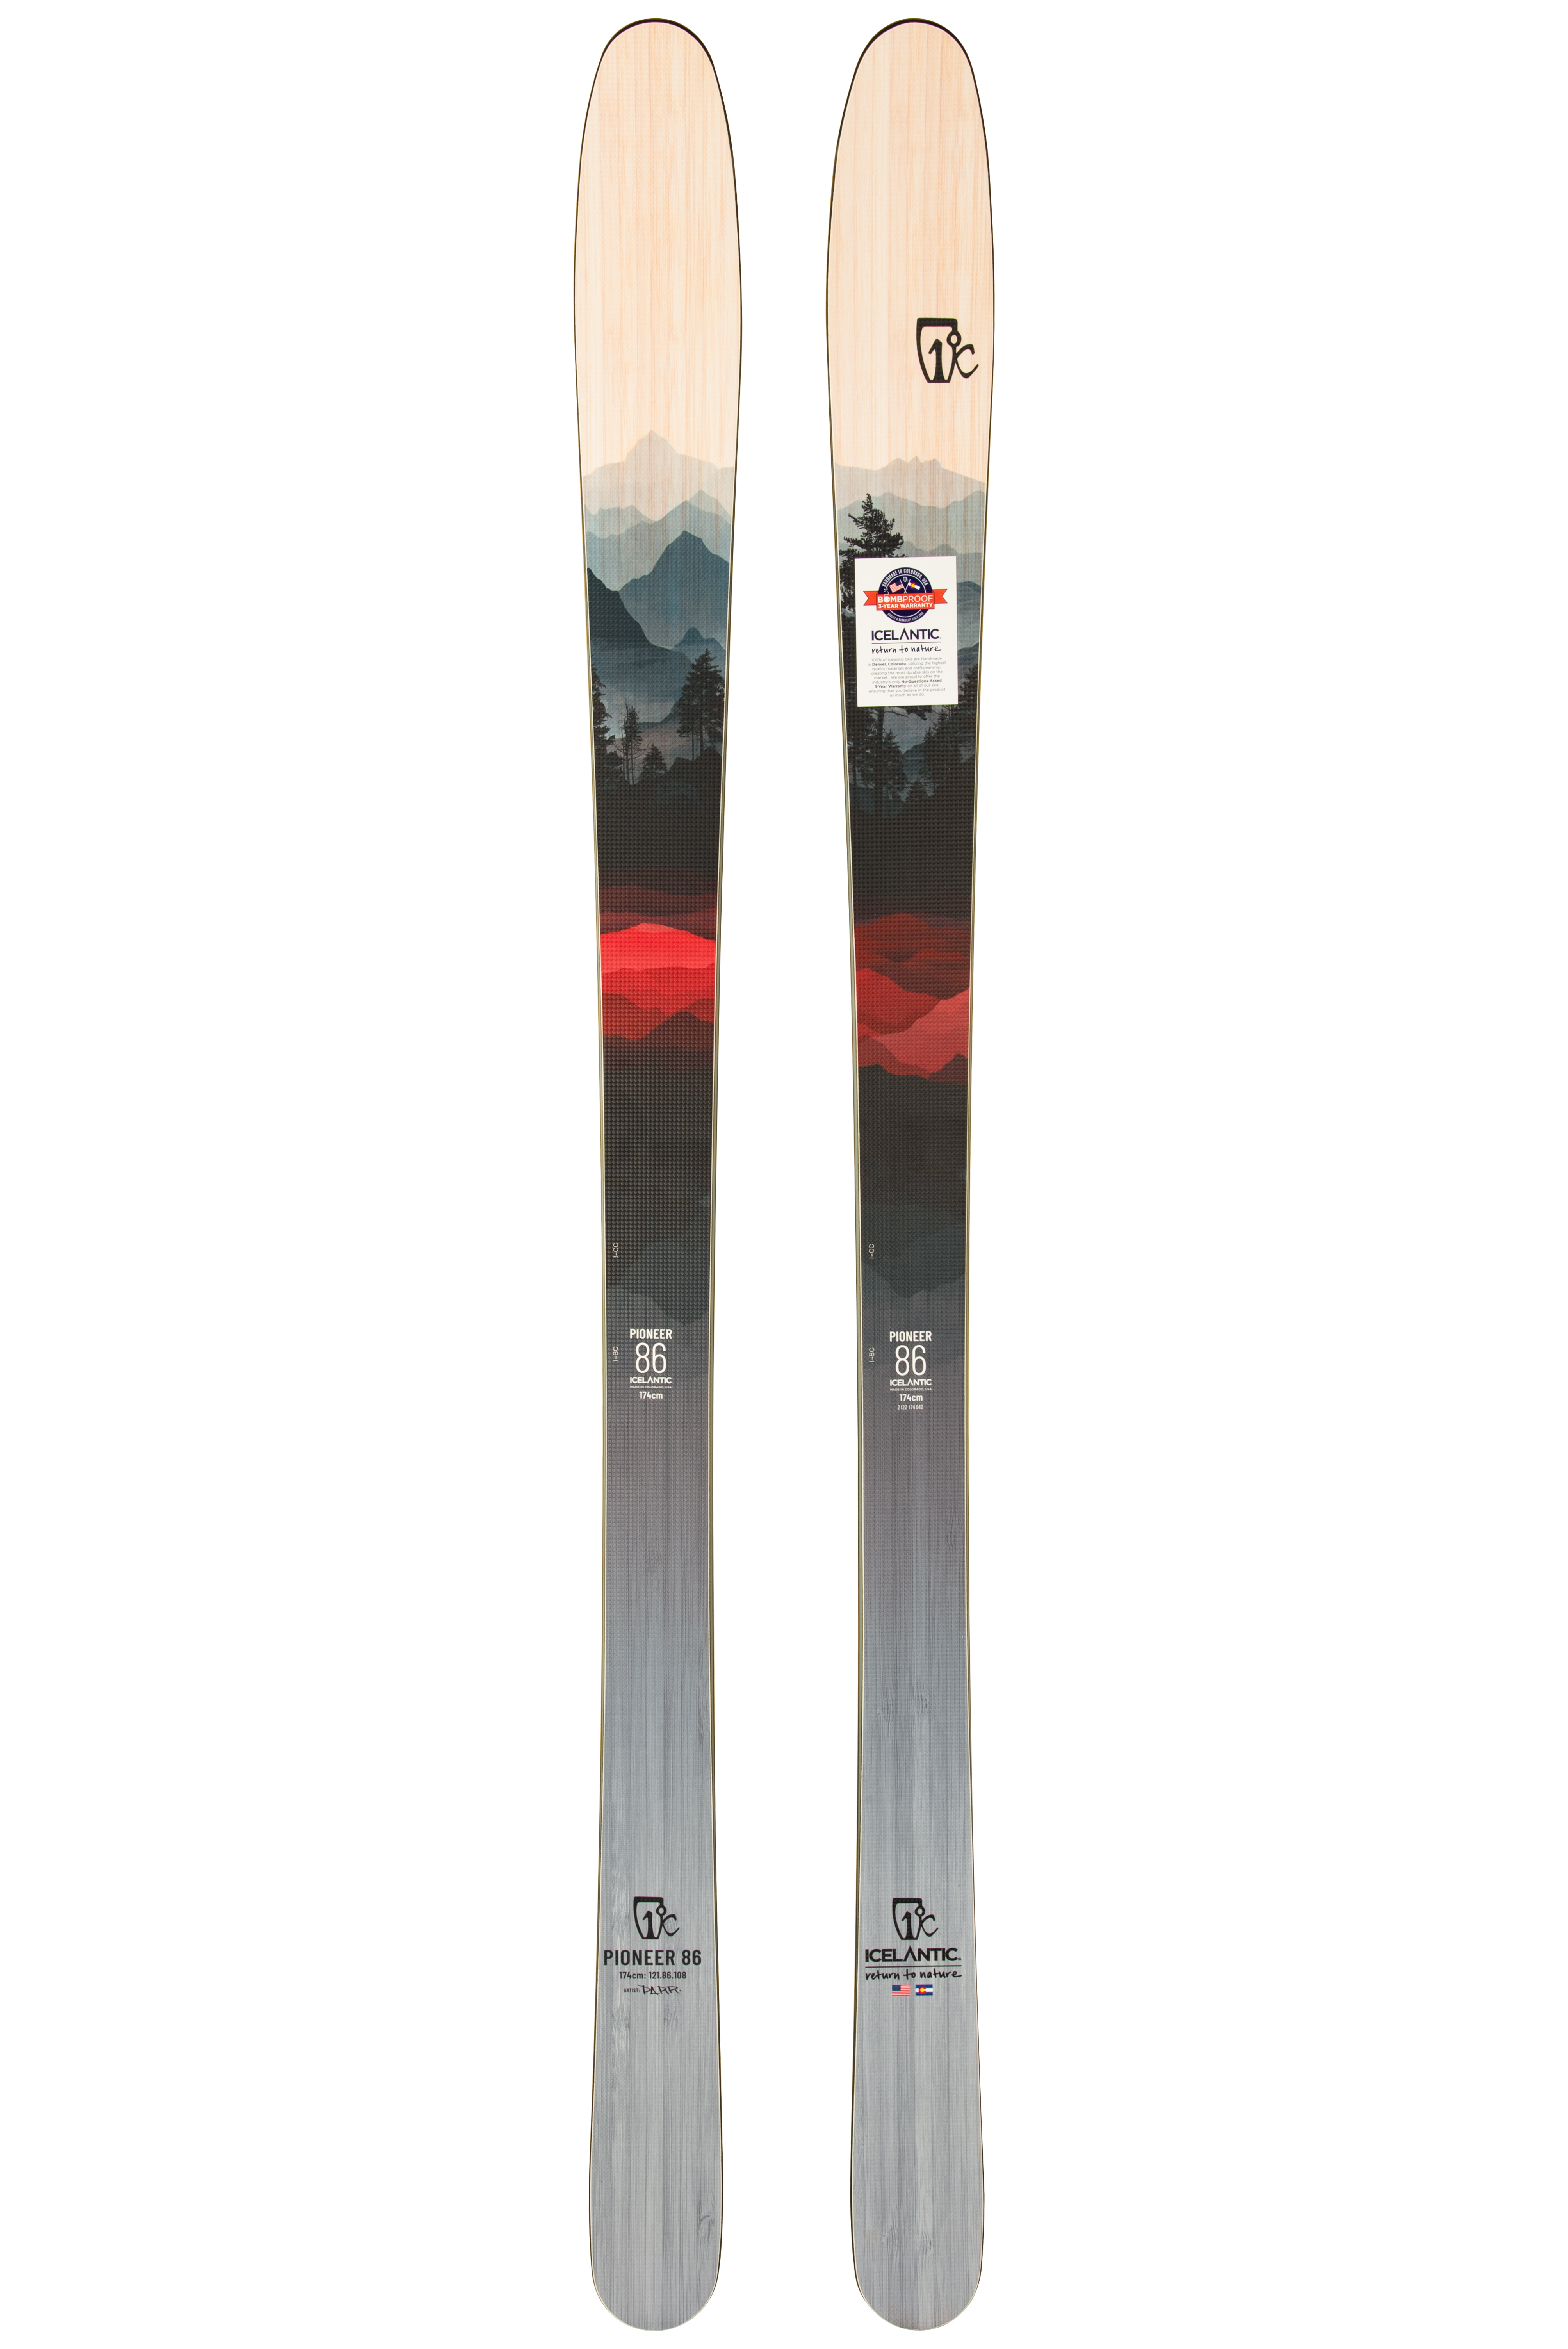 Цена лыжи для карвинга Icelantic Pioneer 86 2021/2022 174cm в Киеве